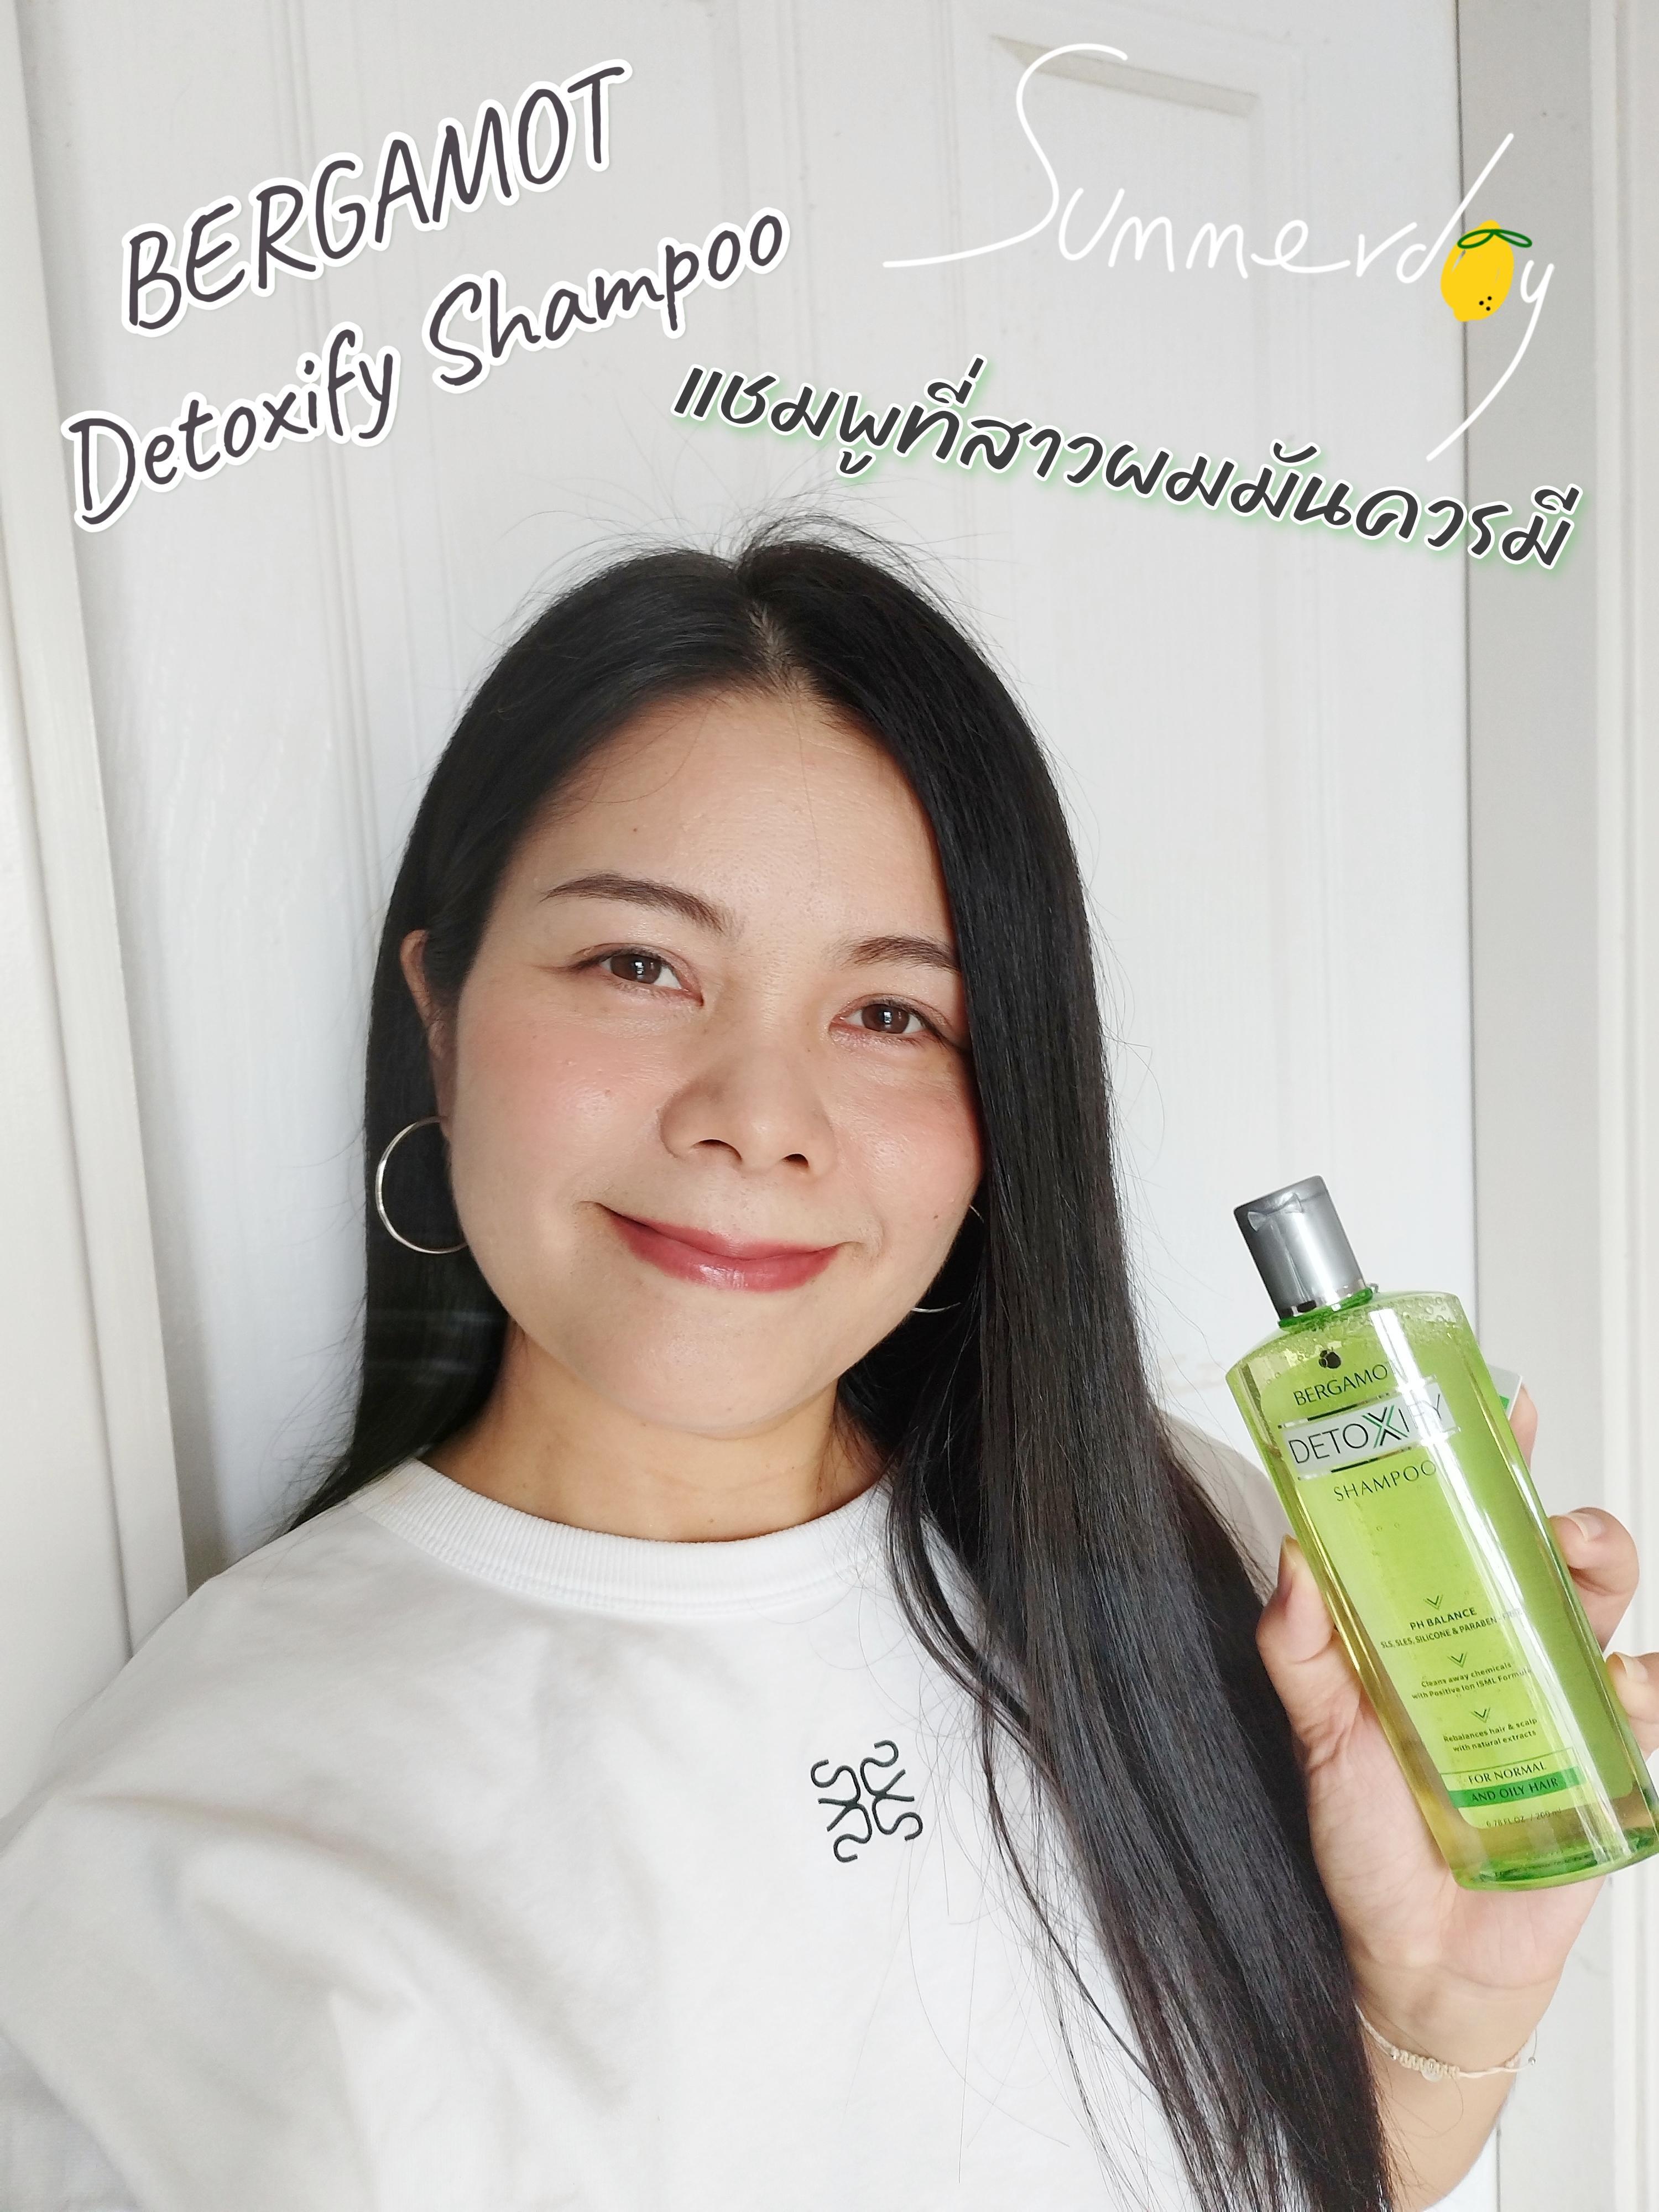 ภาพหน้าปก ดีท็อกซ์เส้นผมจากฝุ่น pm2.5 ด้วย BERGAMOT Detoxify Shampoo ที่:0